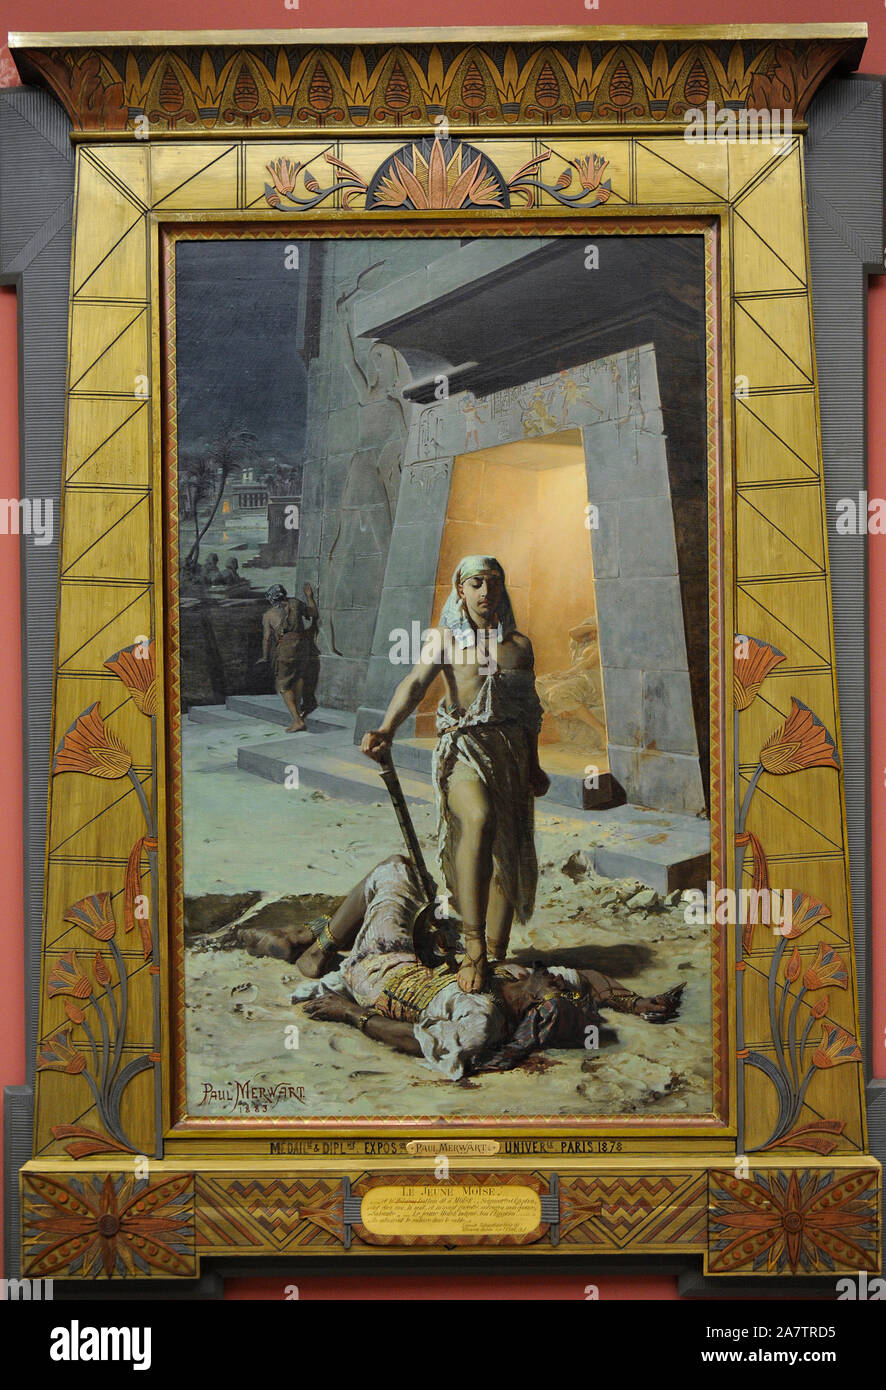 Moïse tue un Égyptien, 1883, par Pawel Merwart (1855-1902). Galerie d'Art Polonais du xixe siècle (Musée Sukiennice). Musée National de Cracovie. La Pologne. Banque D'Images